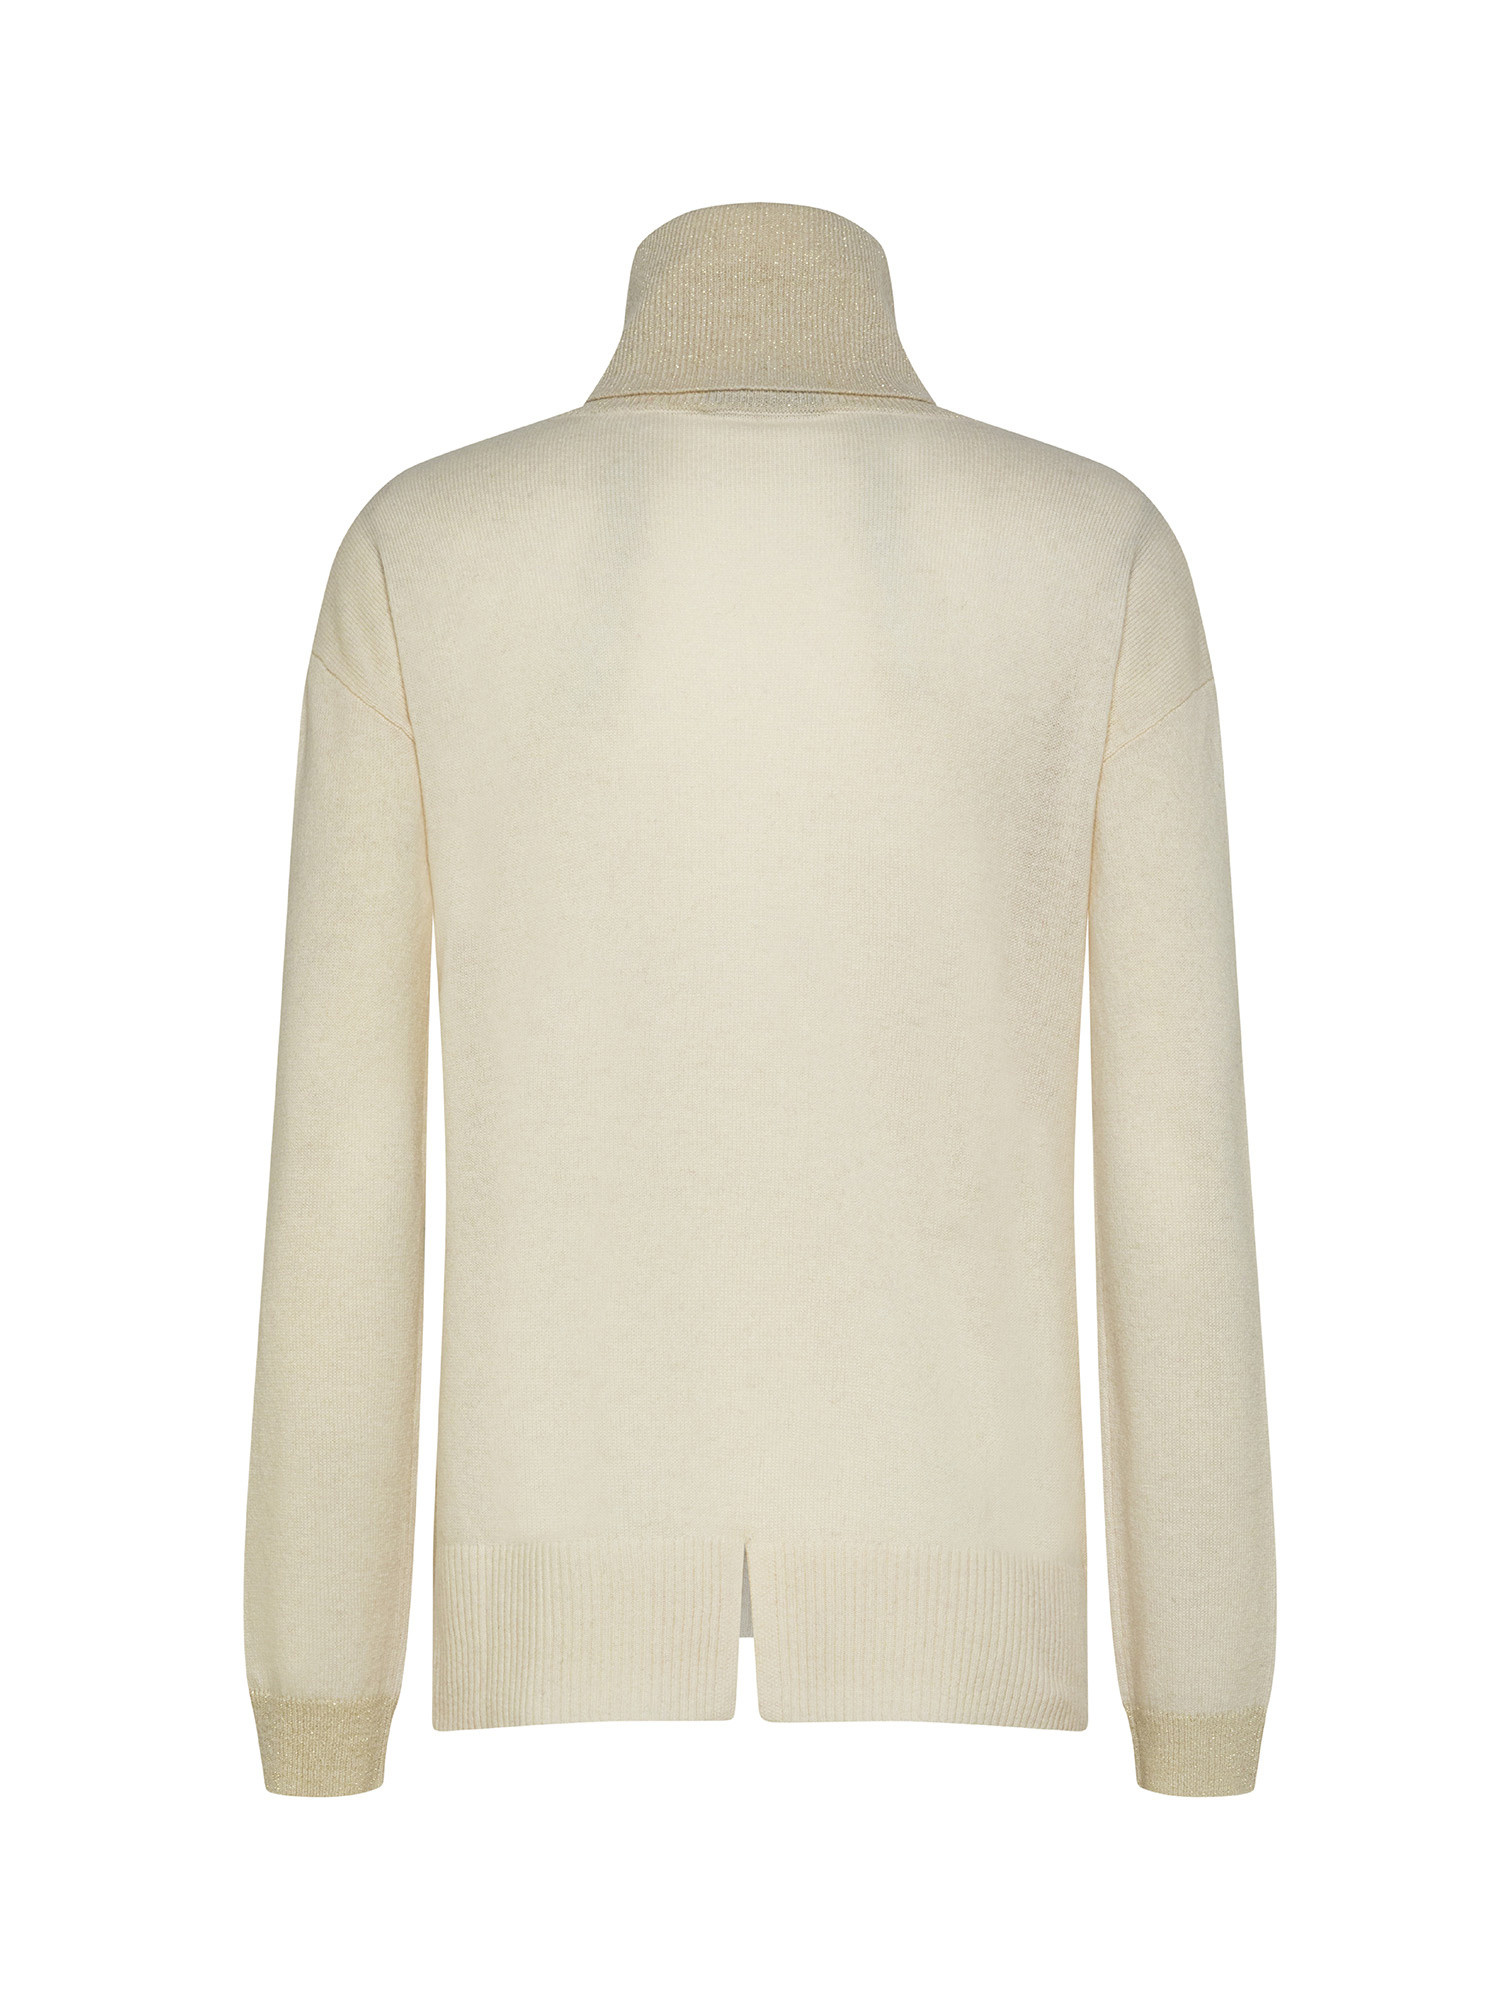 Koan - Pullover collo alto in lana e cashmere, Bianco, large image number 1